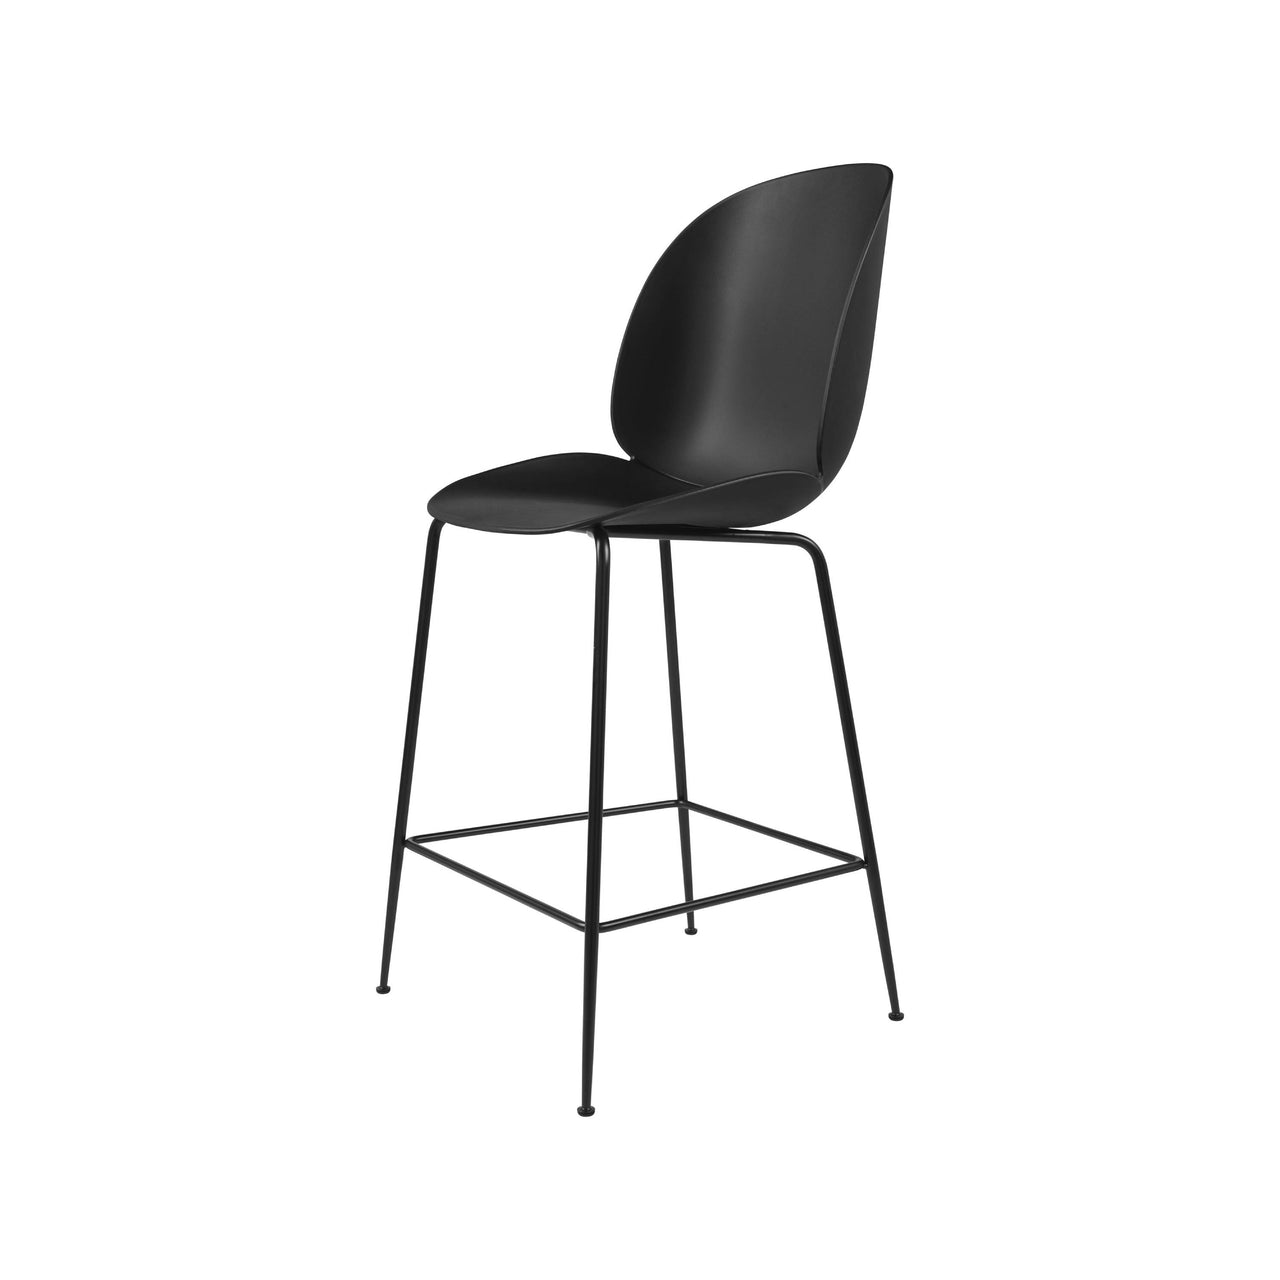 Beetle Bar + Counter Chair: Counter + Black + Black Matt